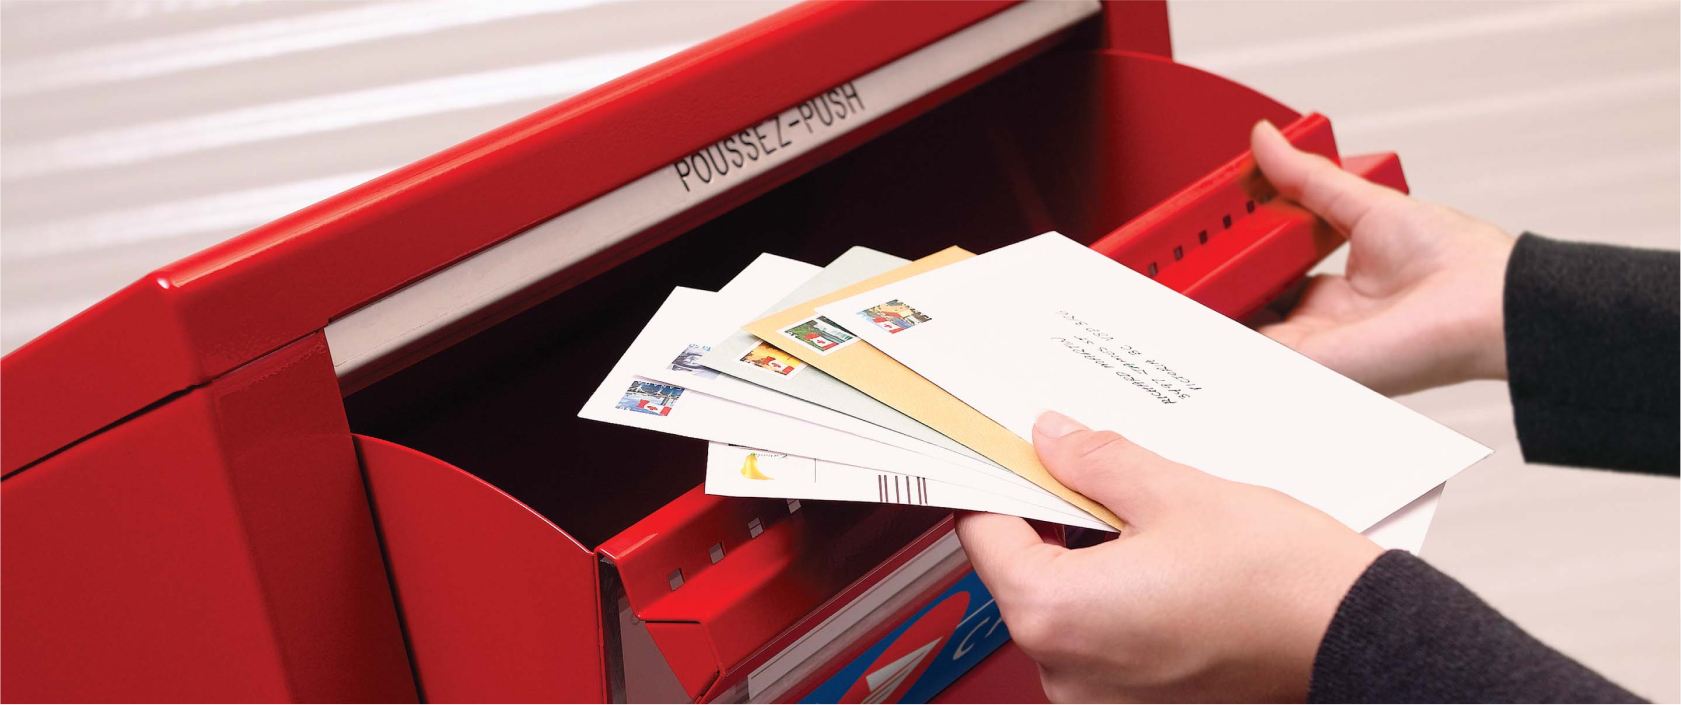 Une pile d’enveloppes prêtes pour l’expédition est placée dans une boîte aux lettres publique de Postes Canada